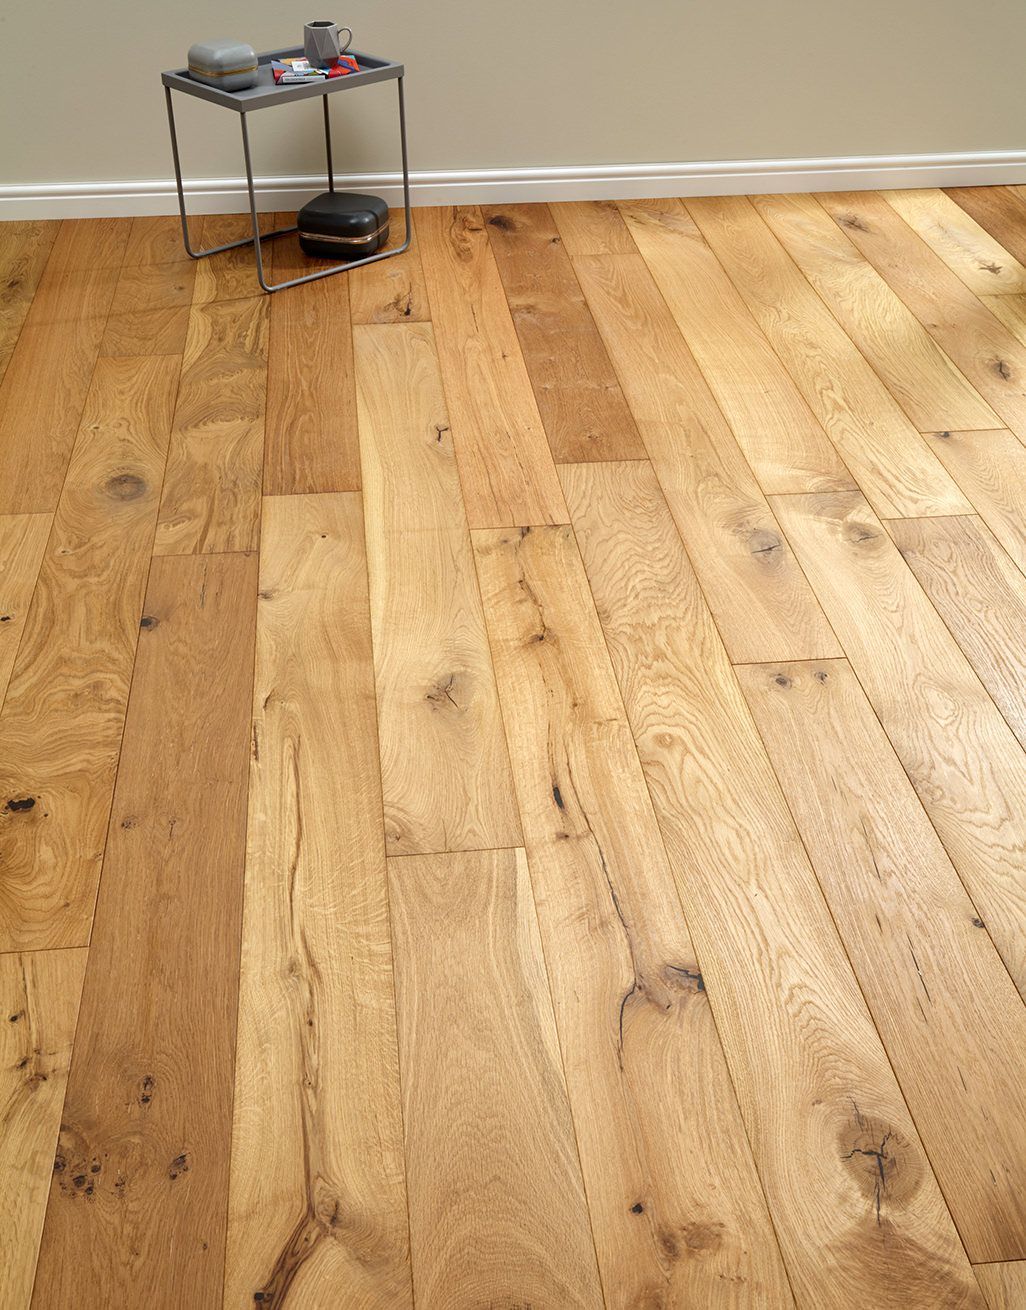 Manhattan Natural Oak Brushed Oiled, Natural Hardwood Floors